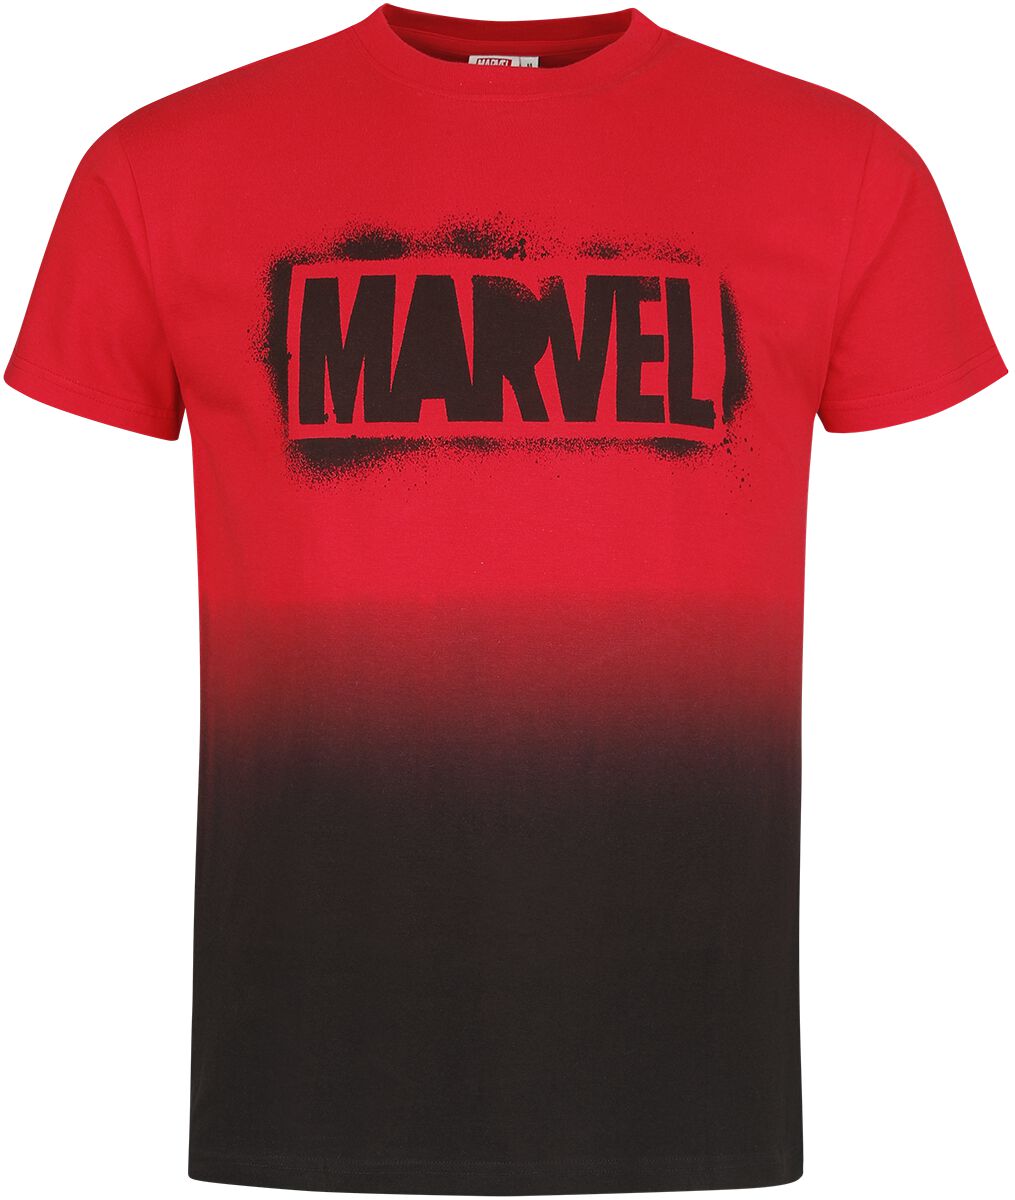 Marvel - Marvel T-Shirt - Logo - S bis XXL - für Männer - Größe S - multicolor  - EMP exklusives Merchandise! von Marvel